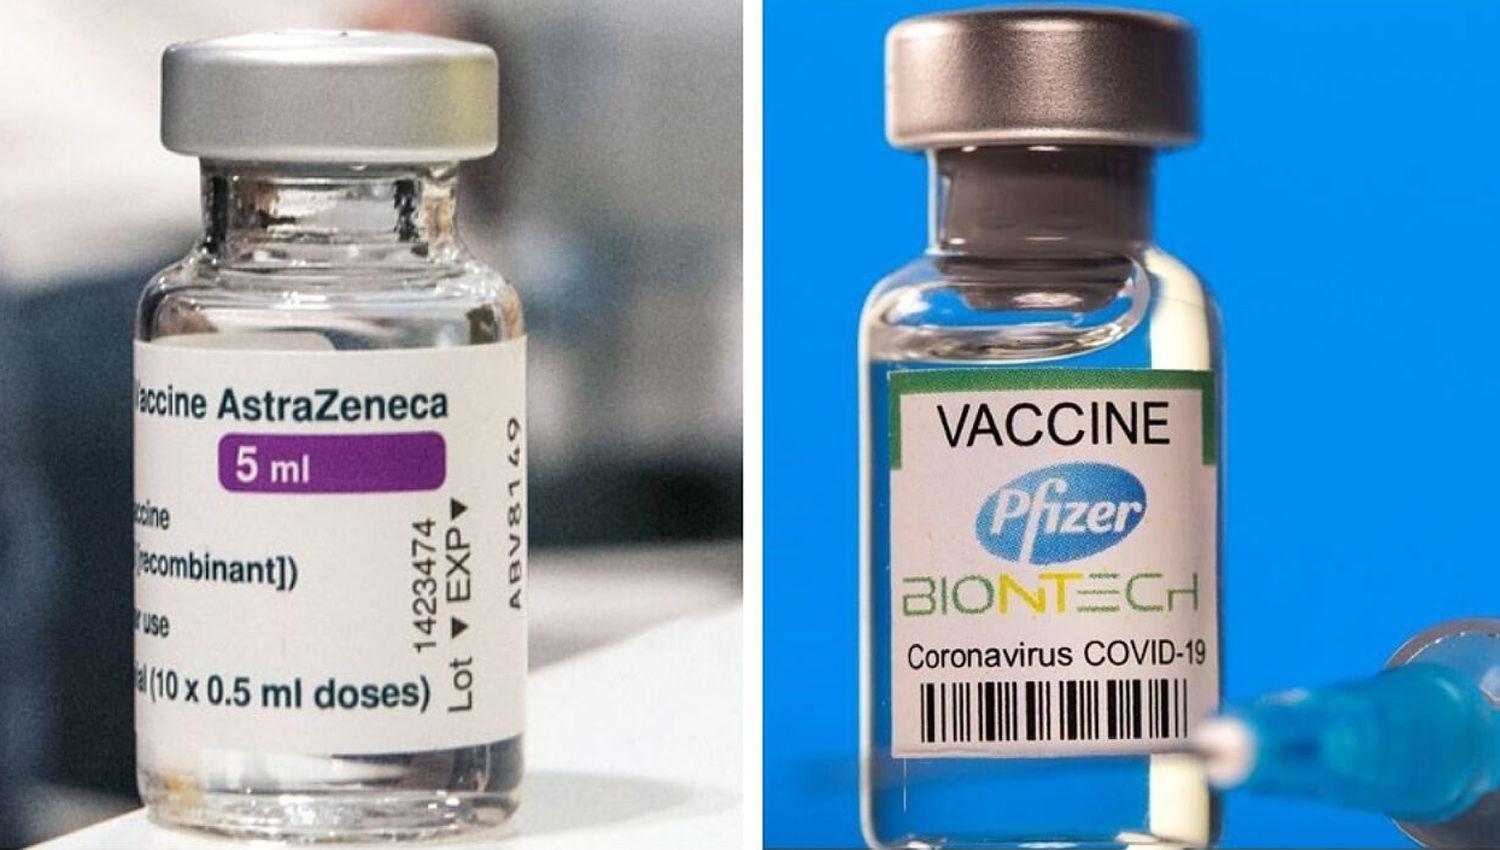 Dos dosis de la vacuna de Pfizer producen maacutes anticuerpos que la de AstraZeneca